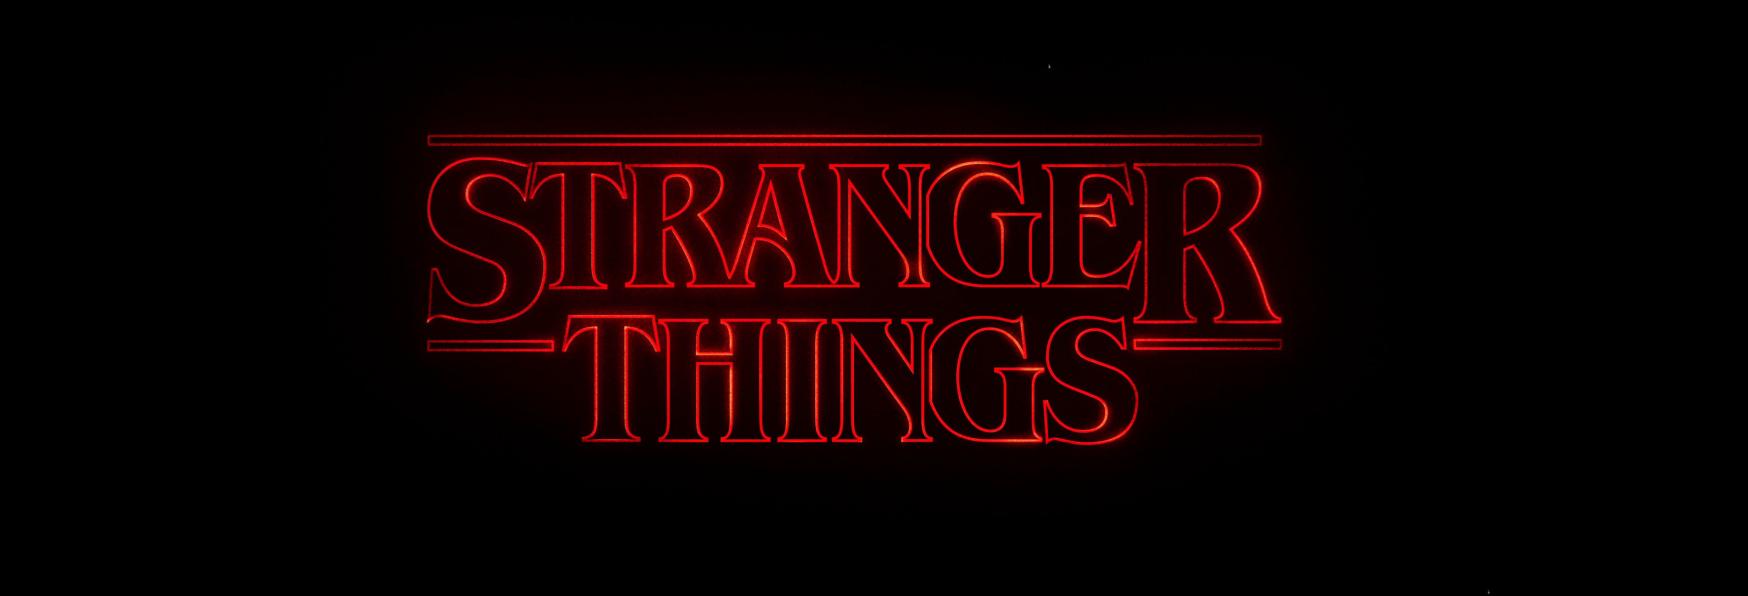 Stranger Things: la Data di Uscita della 4° Stagione e il Rinnovo Ufficiale per una 5°, che sarà l'Ultima